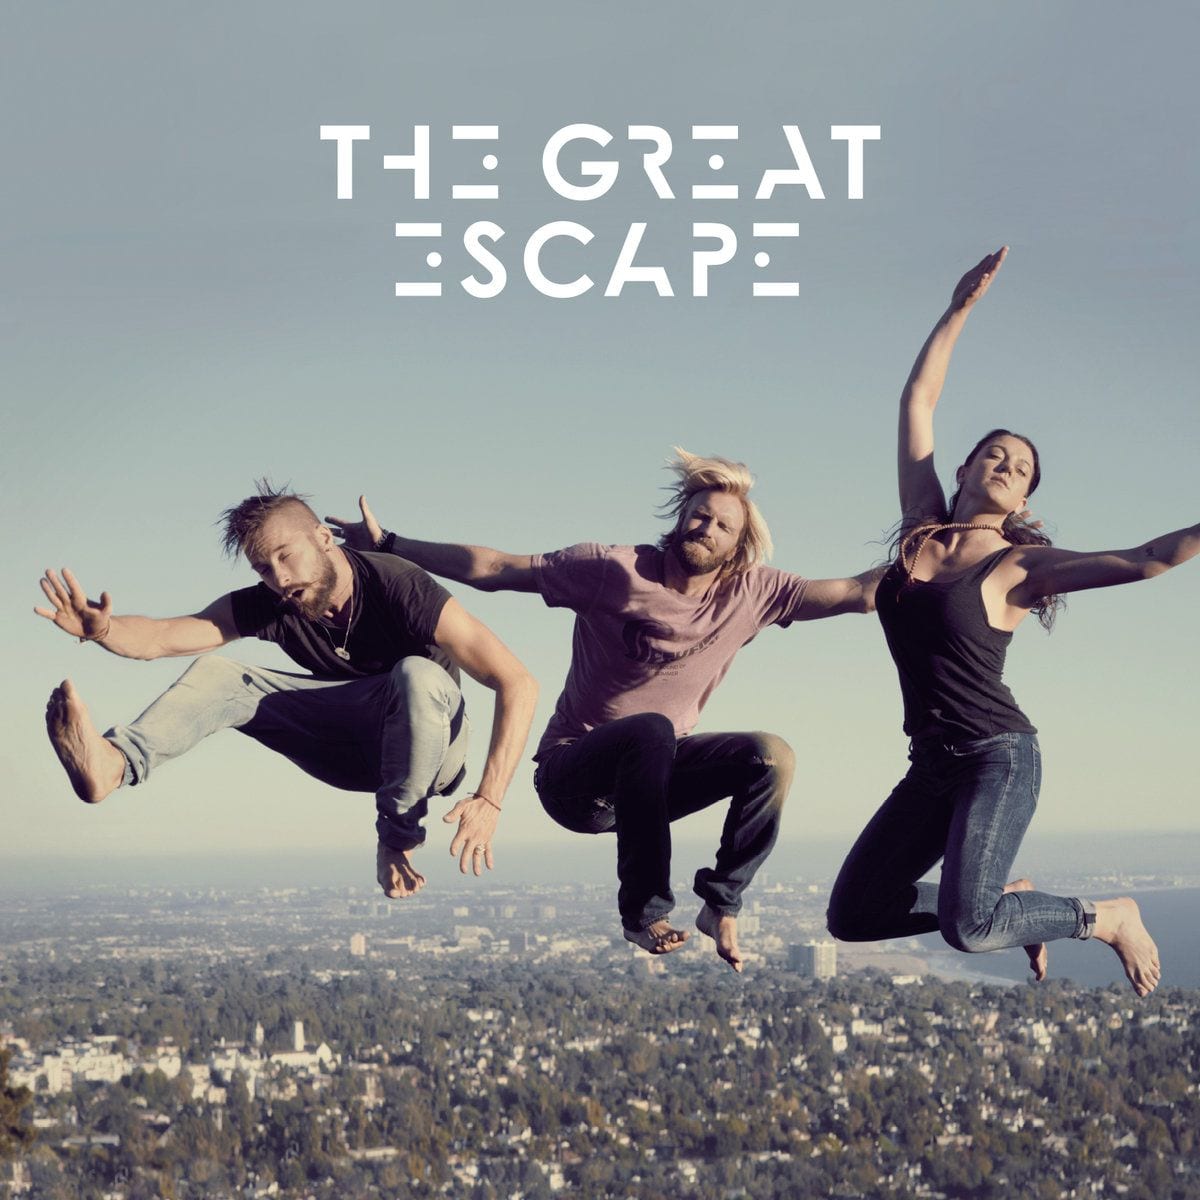 The Great Escape: The Great Escape